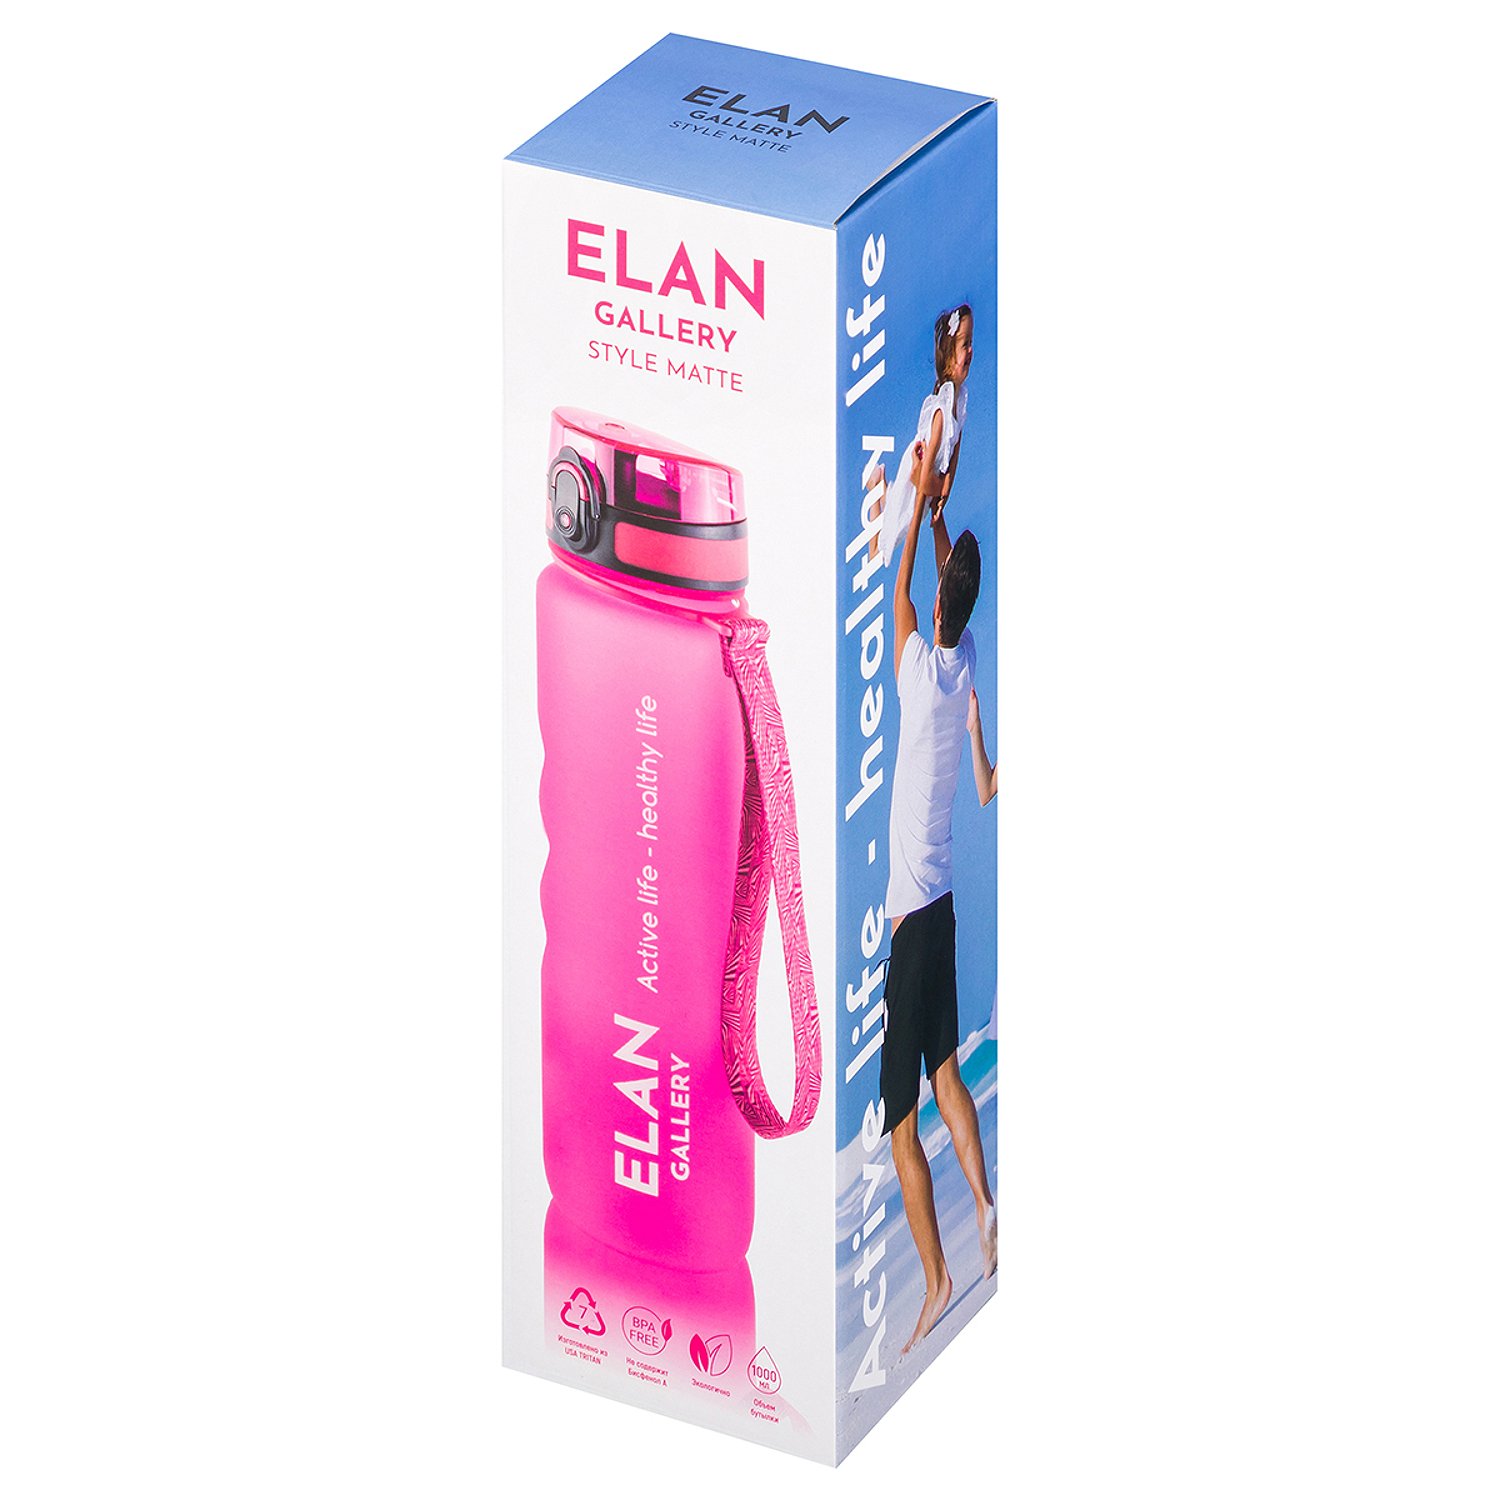 Бутылка для воды Elan Gallery 1000 мл Style Matte фуксия - фото 12